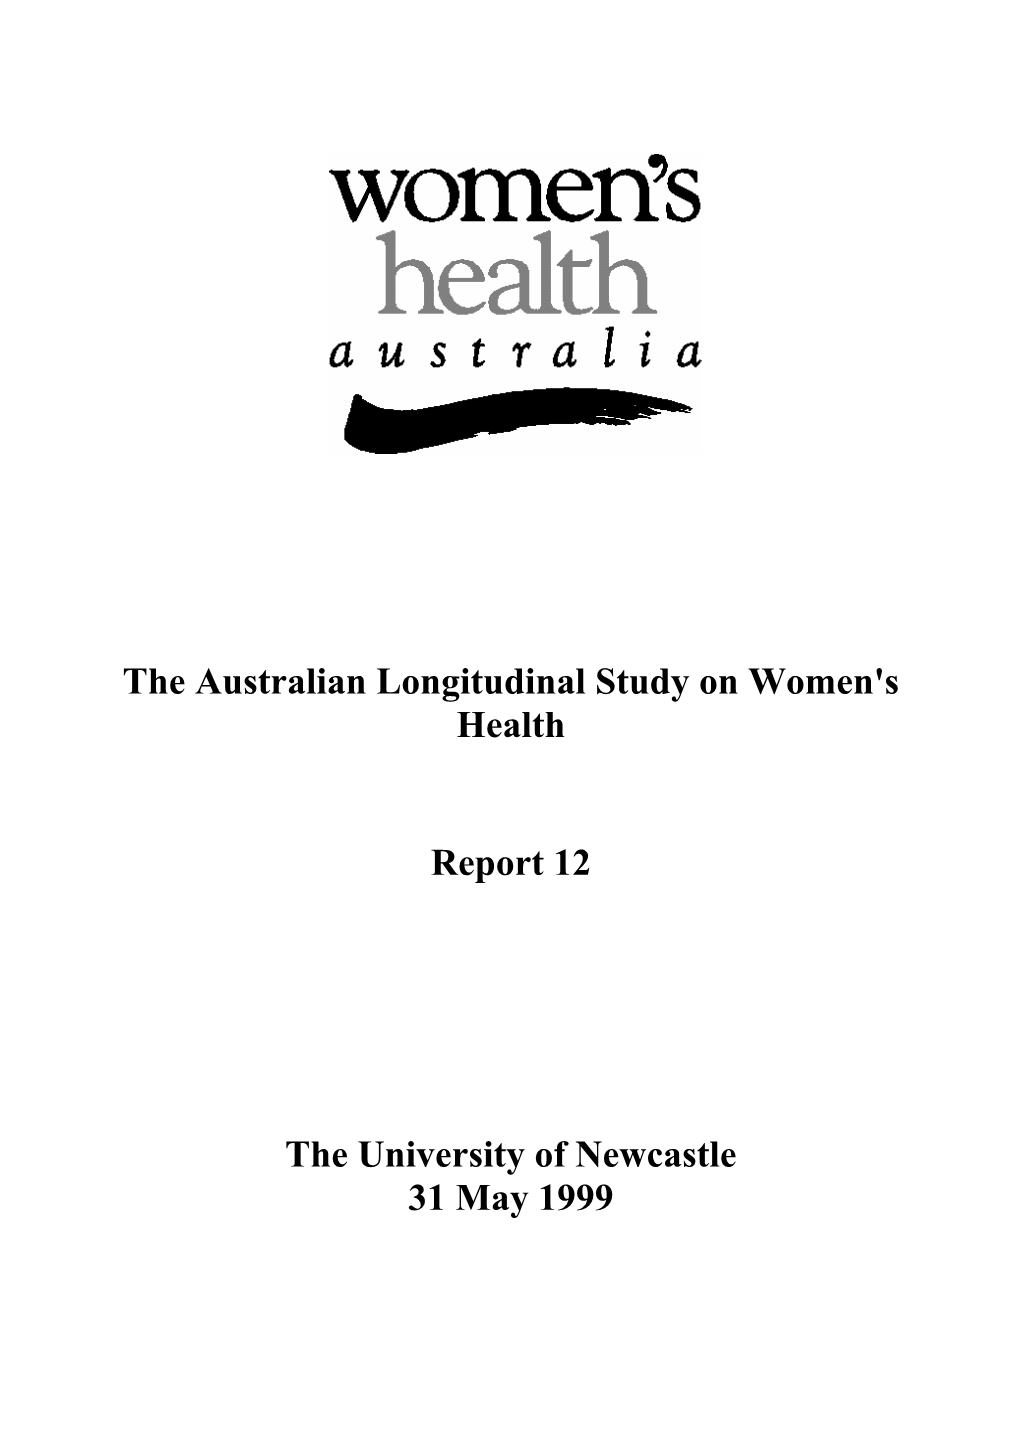 Download Report 12 (PDF)